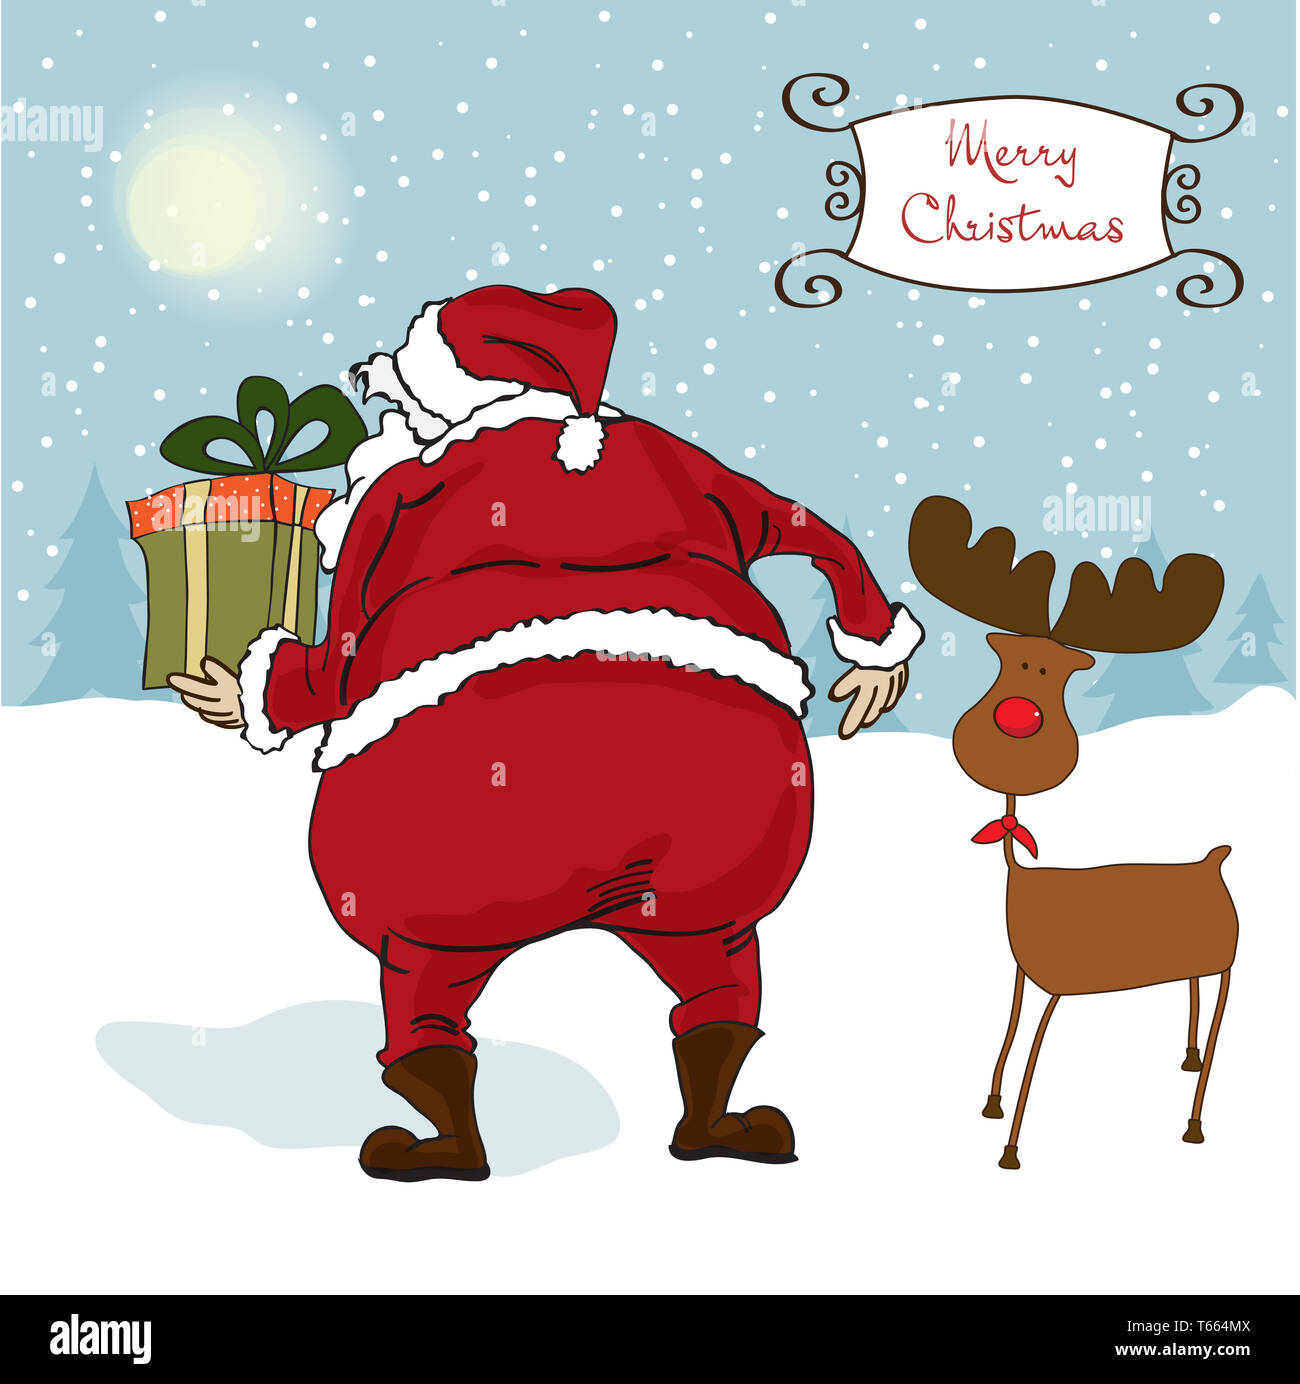 Santa kommt, Weihnachtsgrußkarte Stockfoto